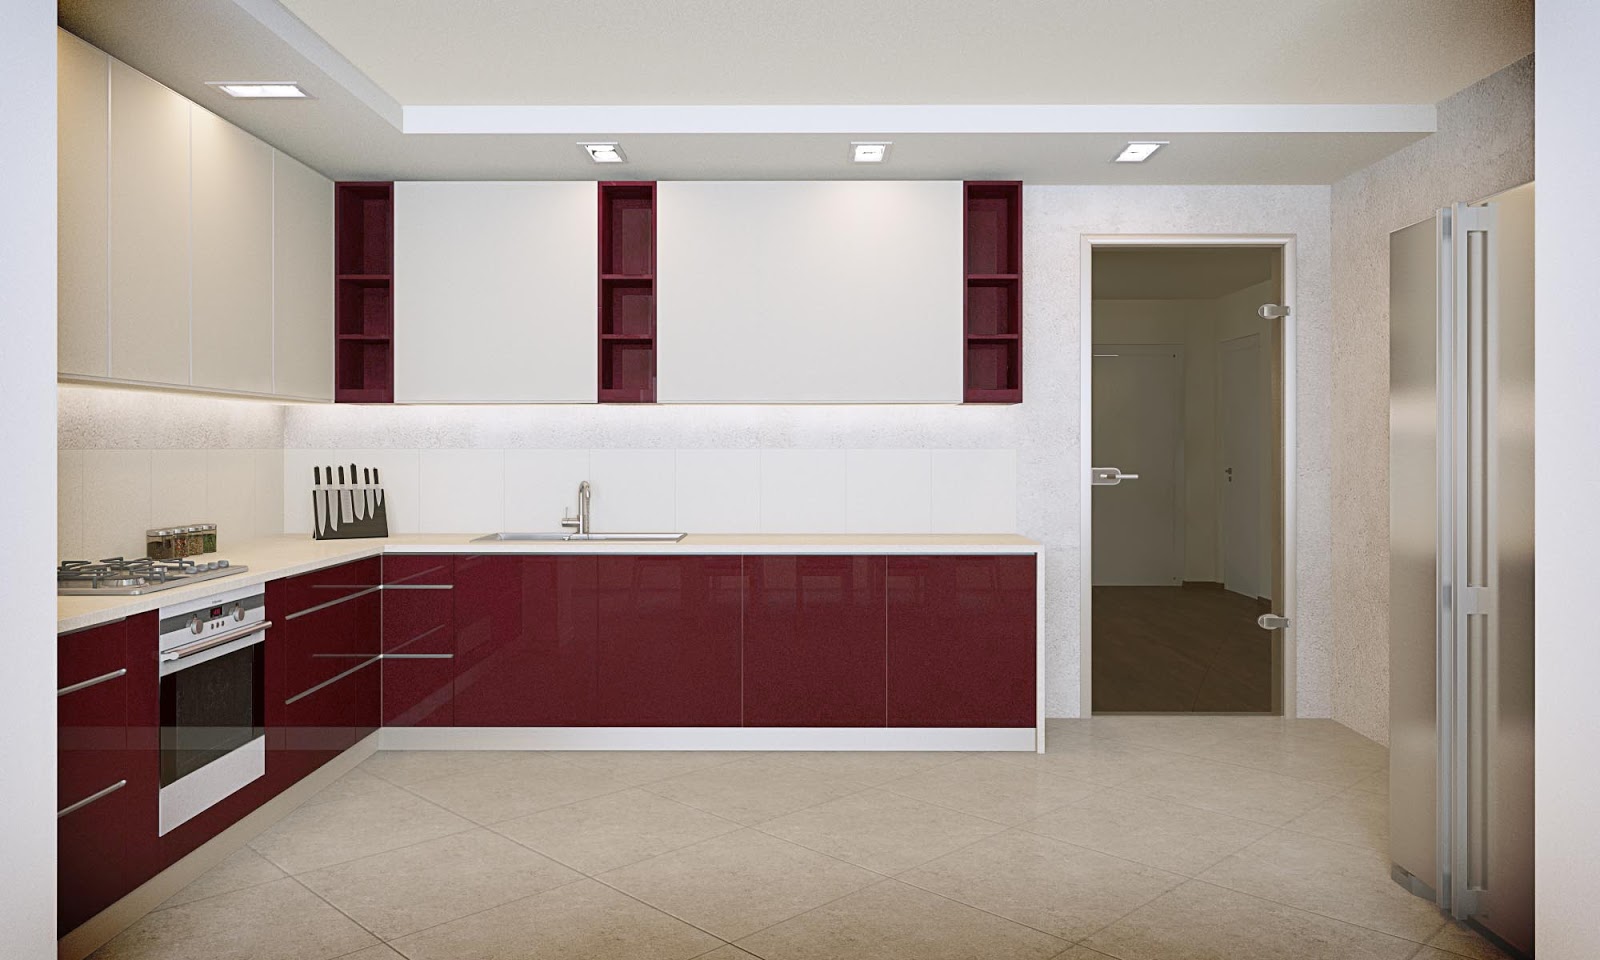 Візуалізація приміщення кухні після принципового погодження з замовником концепції на рівні ескізів.